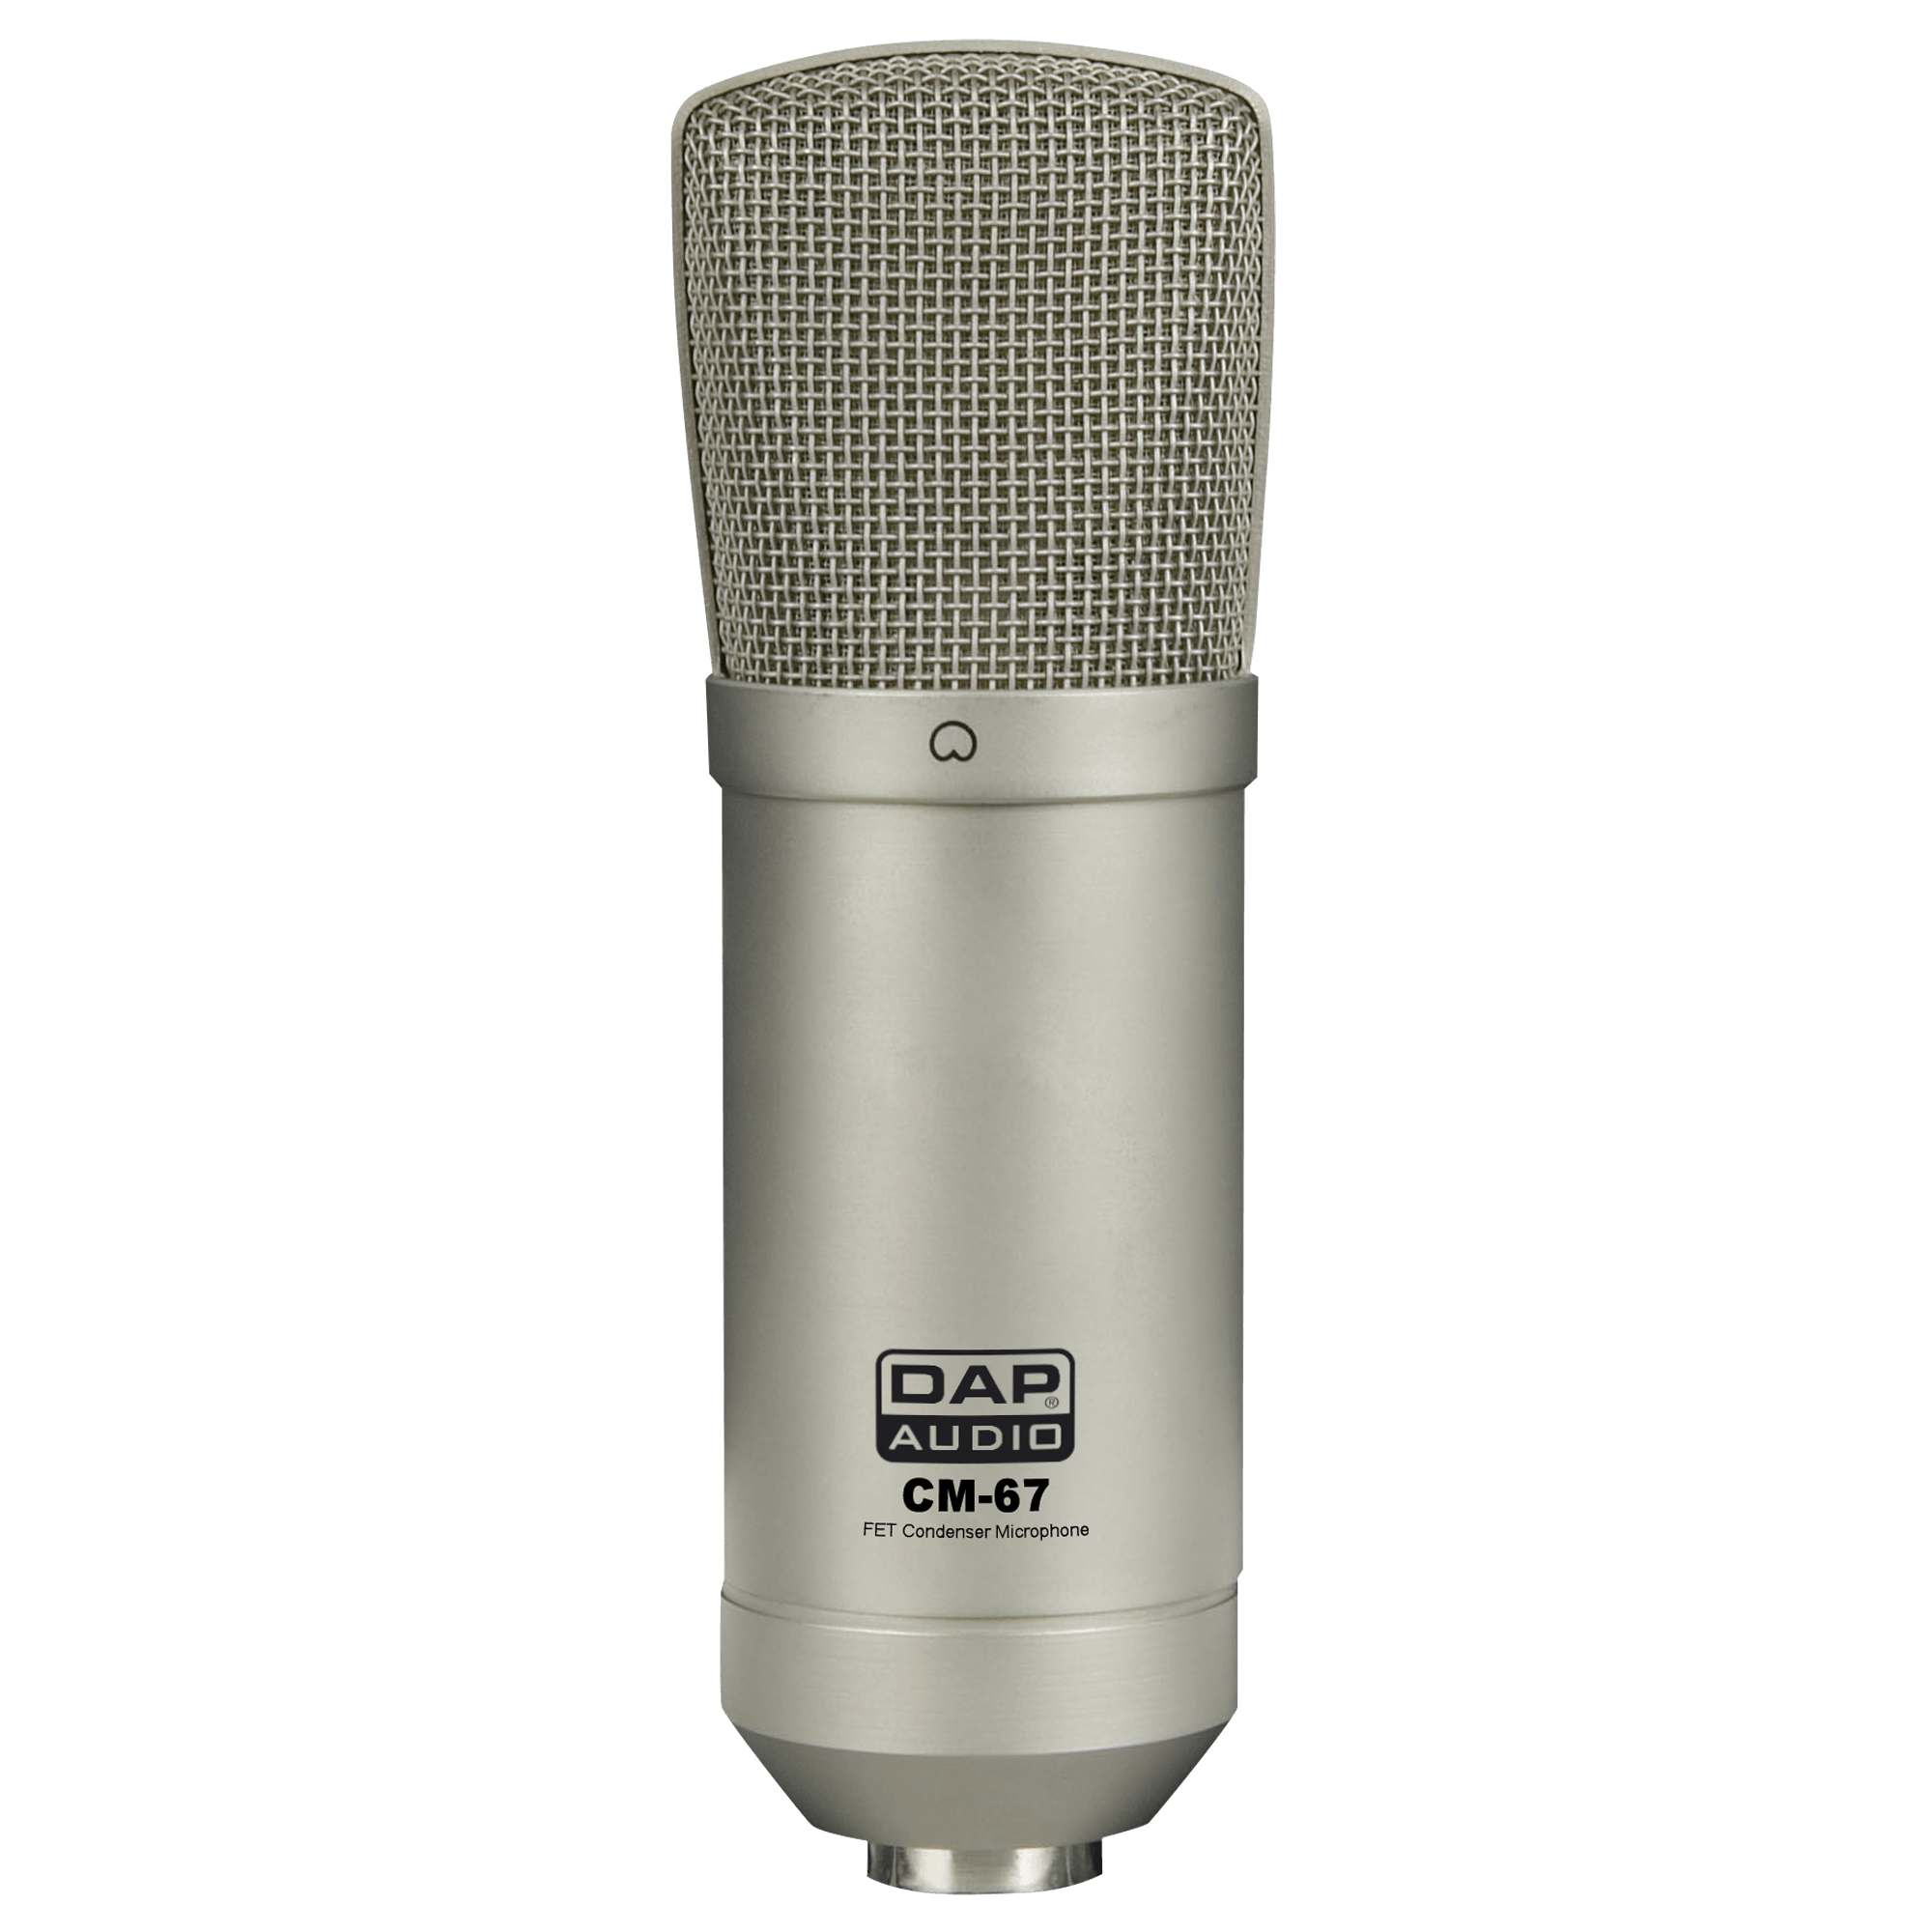 DAP CM-67 Large-diaphragm FET Condenser Studio Microphone - DY Pro Audio